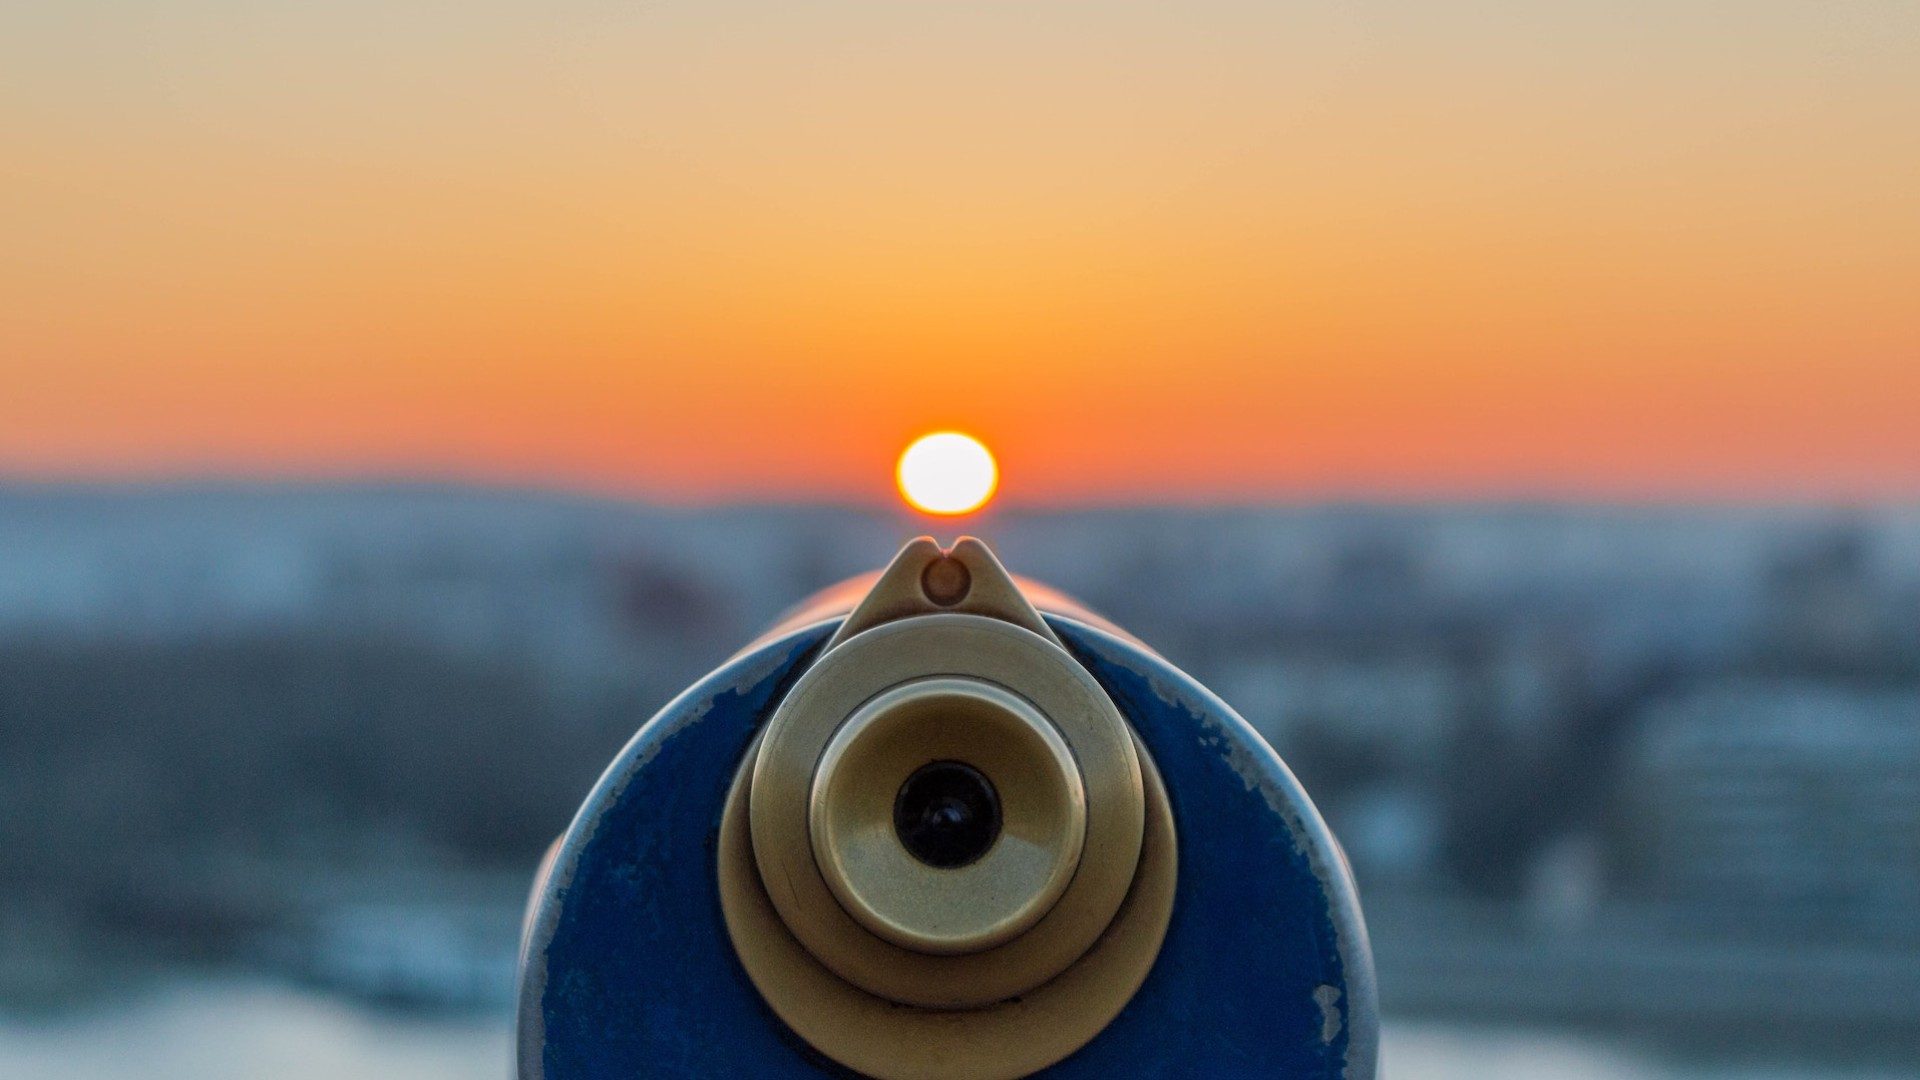 Das Bild zeigt ein Fernrohr durch den man den Sonnenuntergang im Hintergrund beobachten kann.